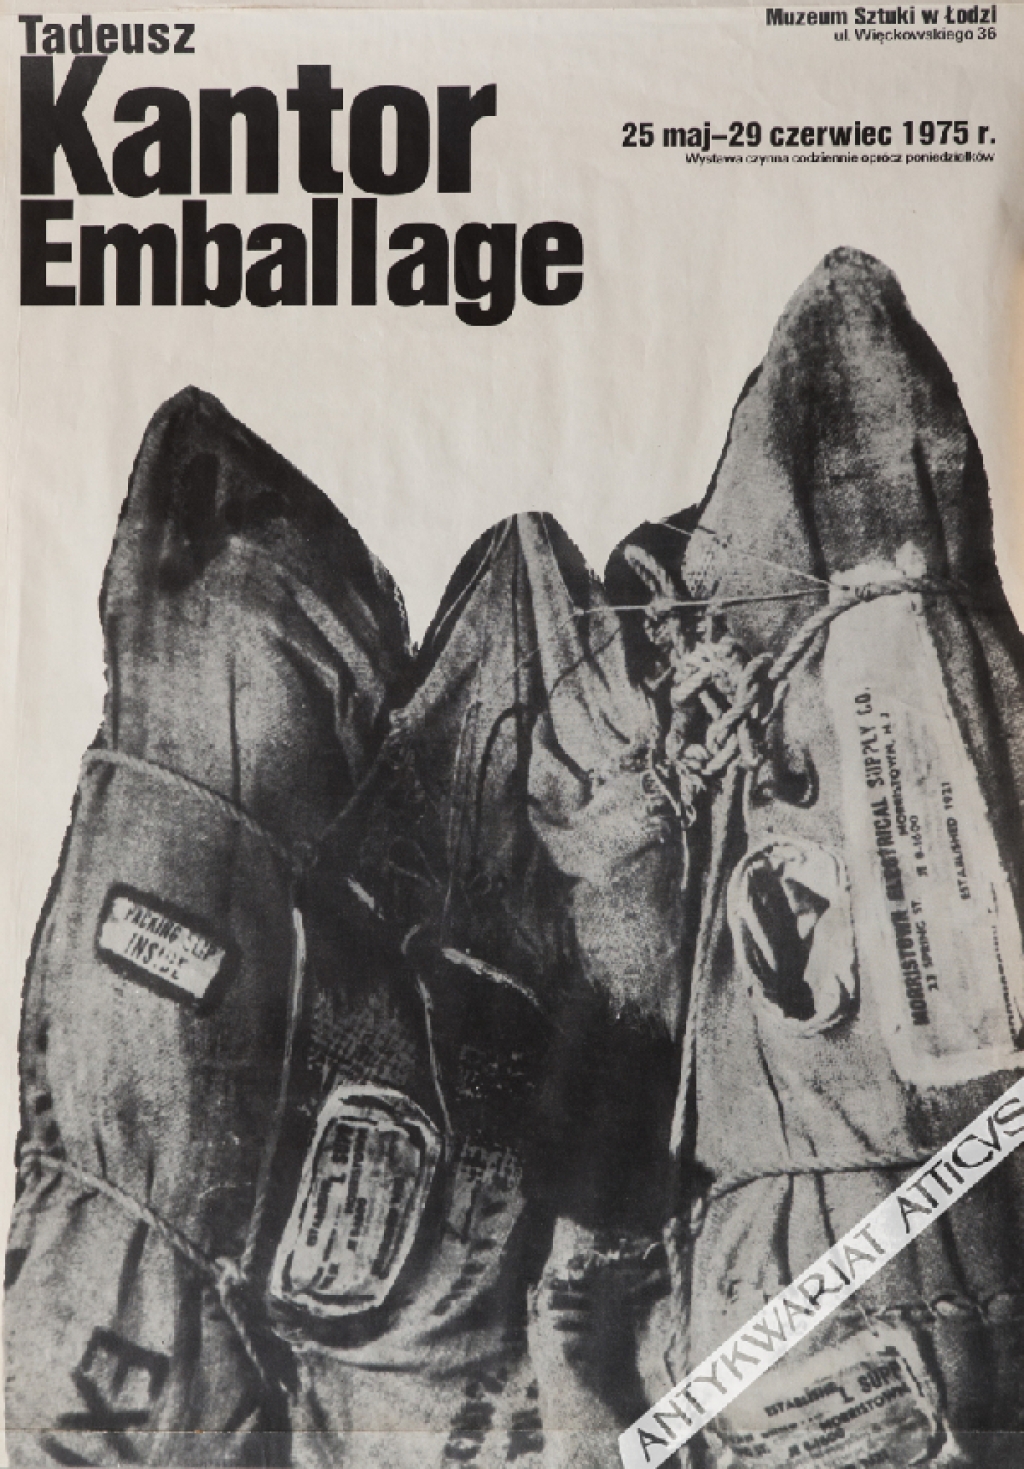 [plakat, 1975] Tadeusz Kantor Emballage. Muzeum Sztuki w Łodzi 25 maj-29 czerwiec 1975